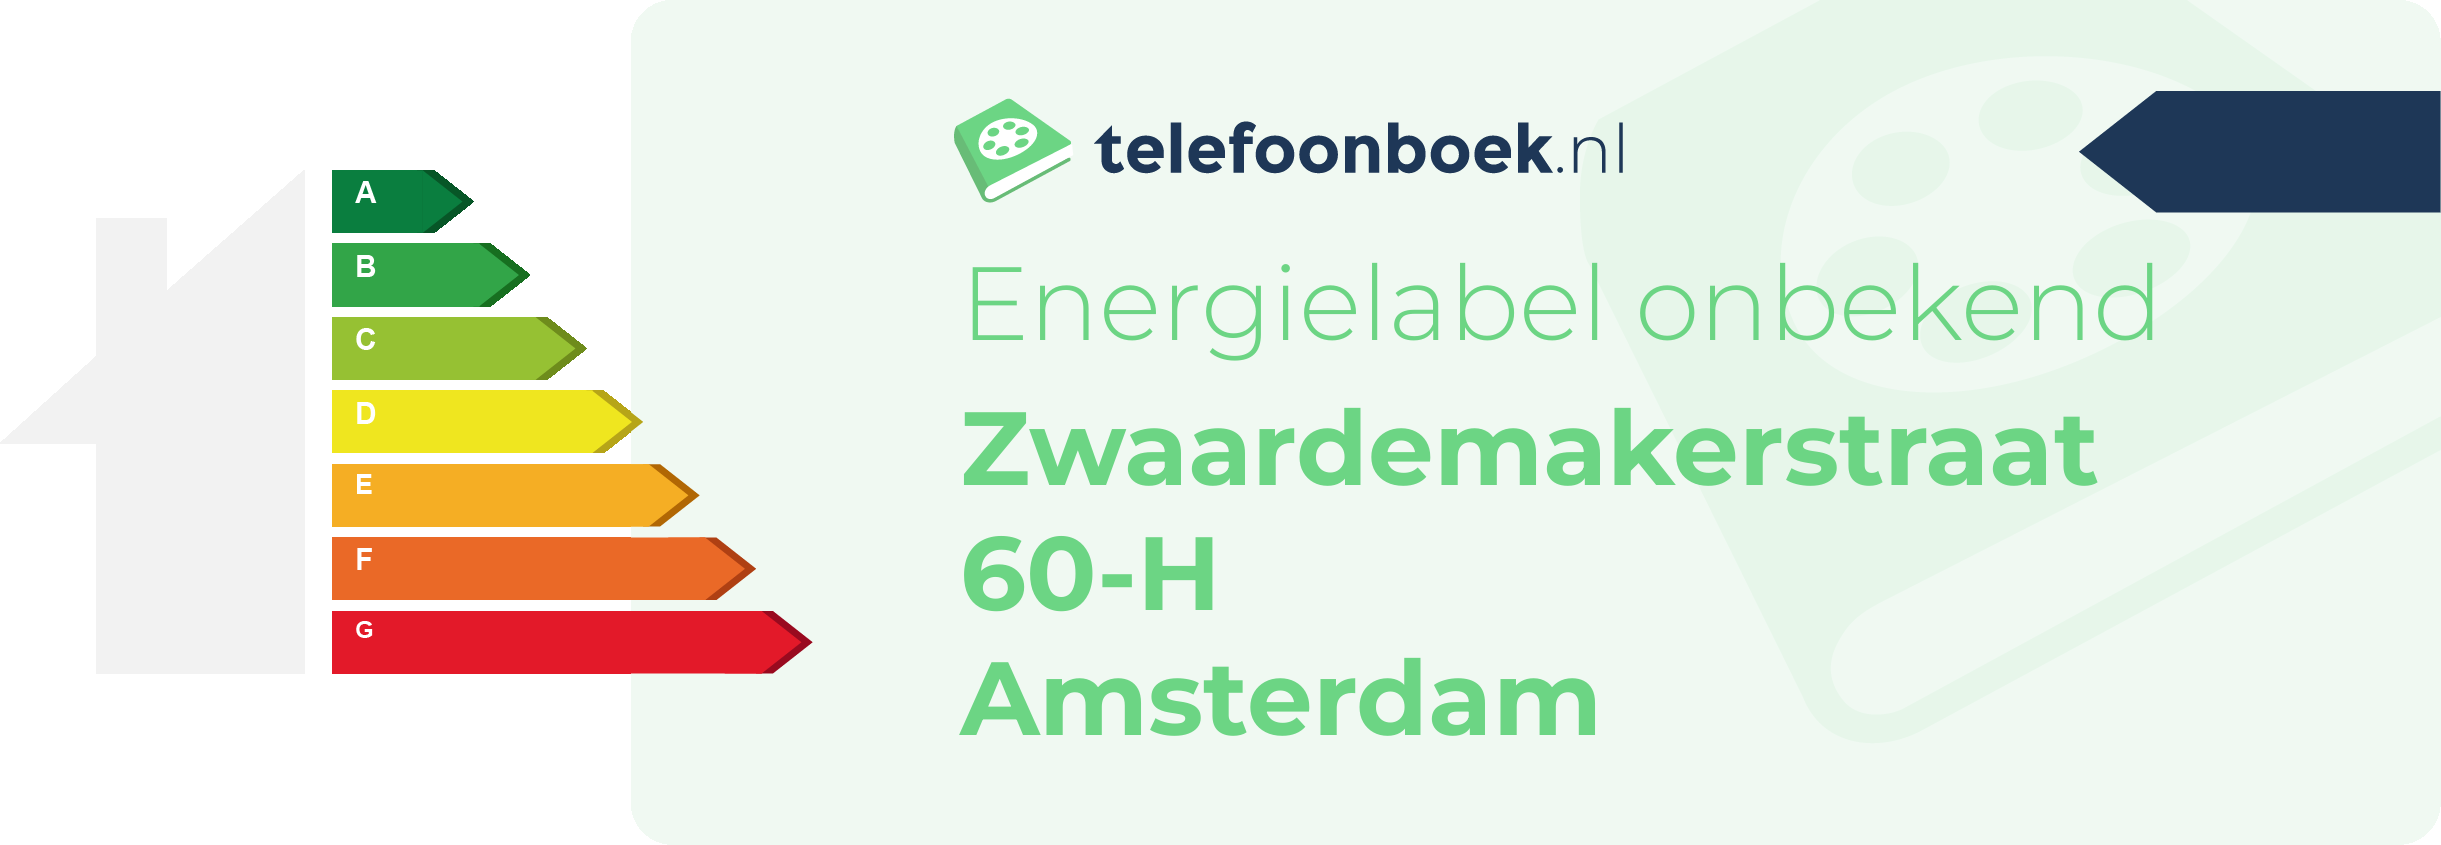 Energielabel Zwaardemakerstraat 60-H Amsterdam